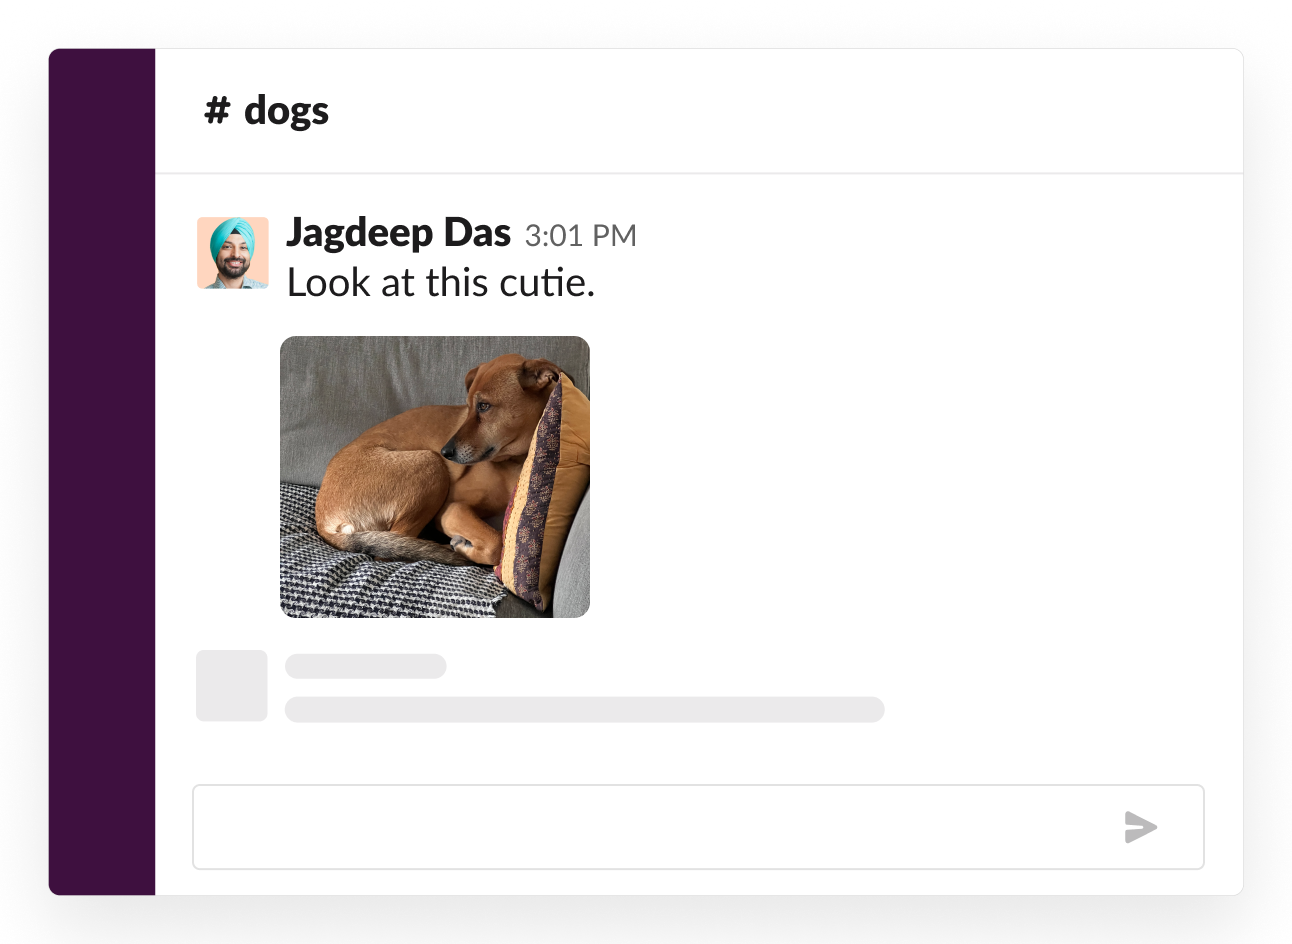 Exemplo de um canal social sobre cachorros em que alguém compartilhou uma foto do seu cachorrinho